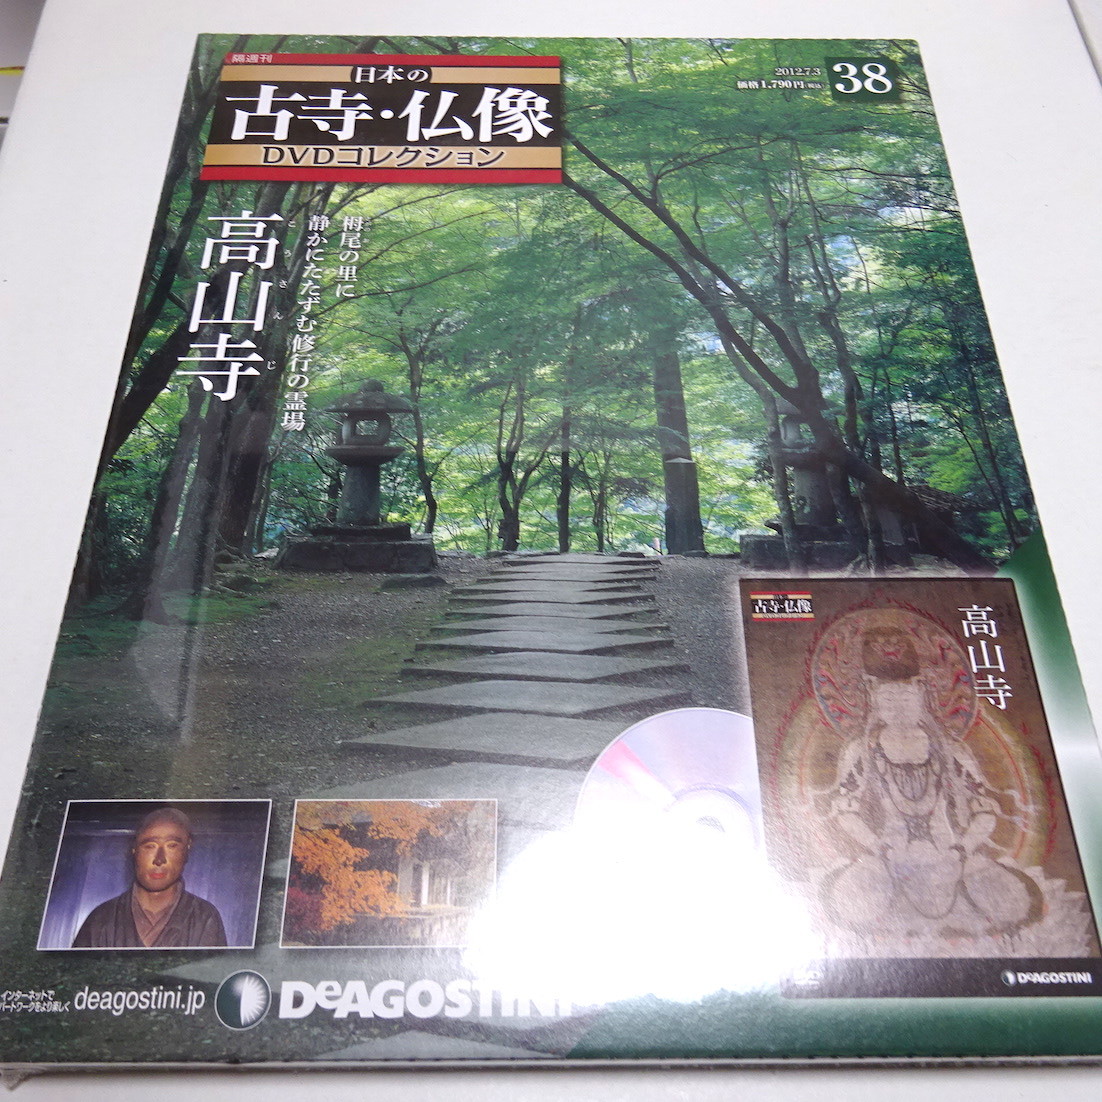  нераспечатанный /DVD& брошюра японский старый храм изображение Будды DVD коллекция 38 номер ( высота гора храм )